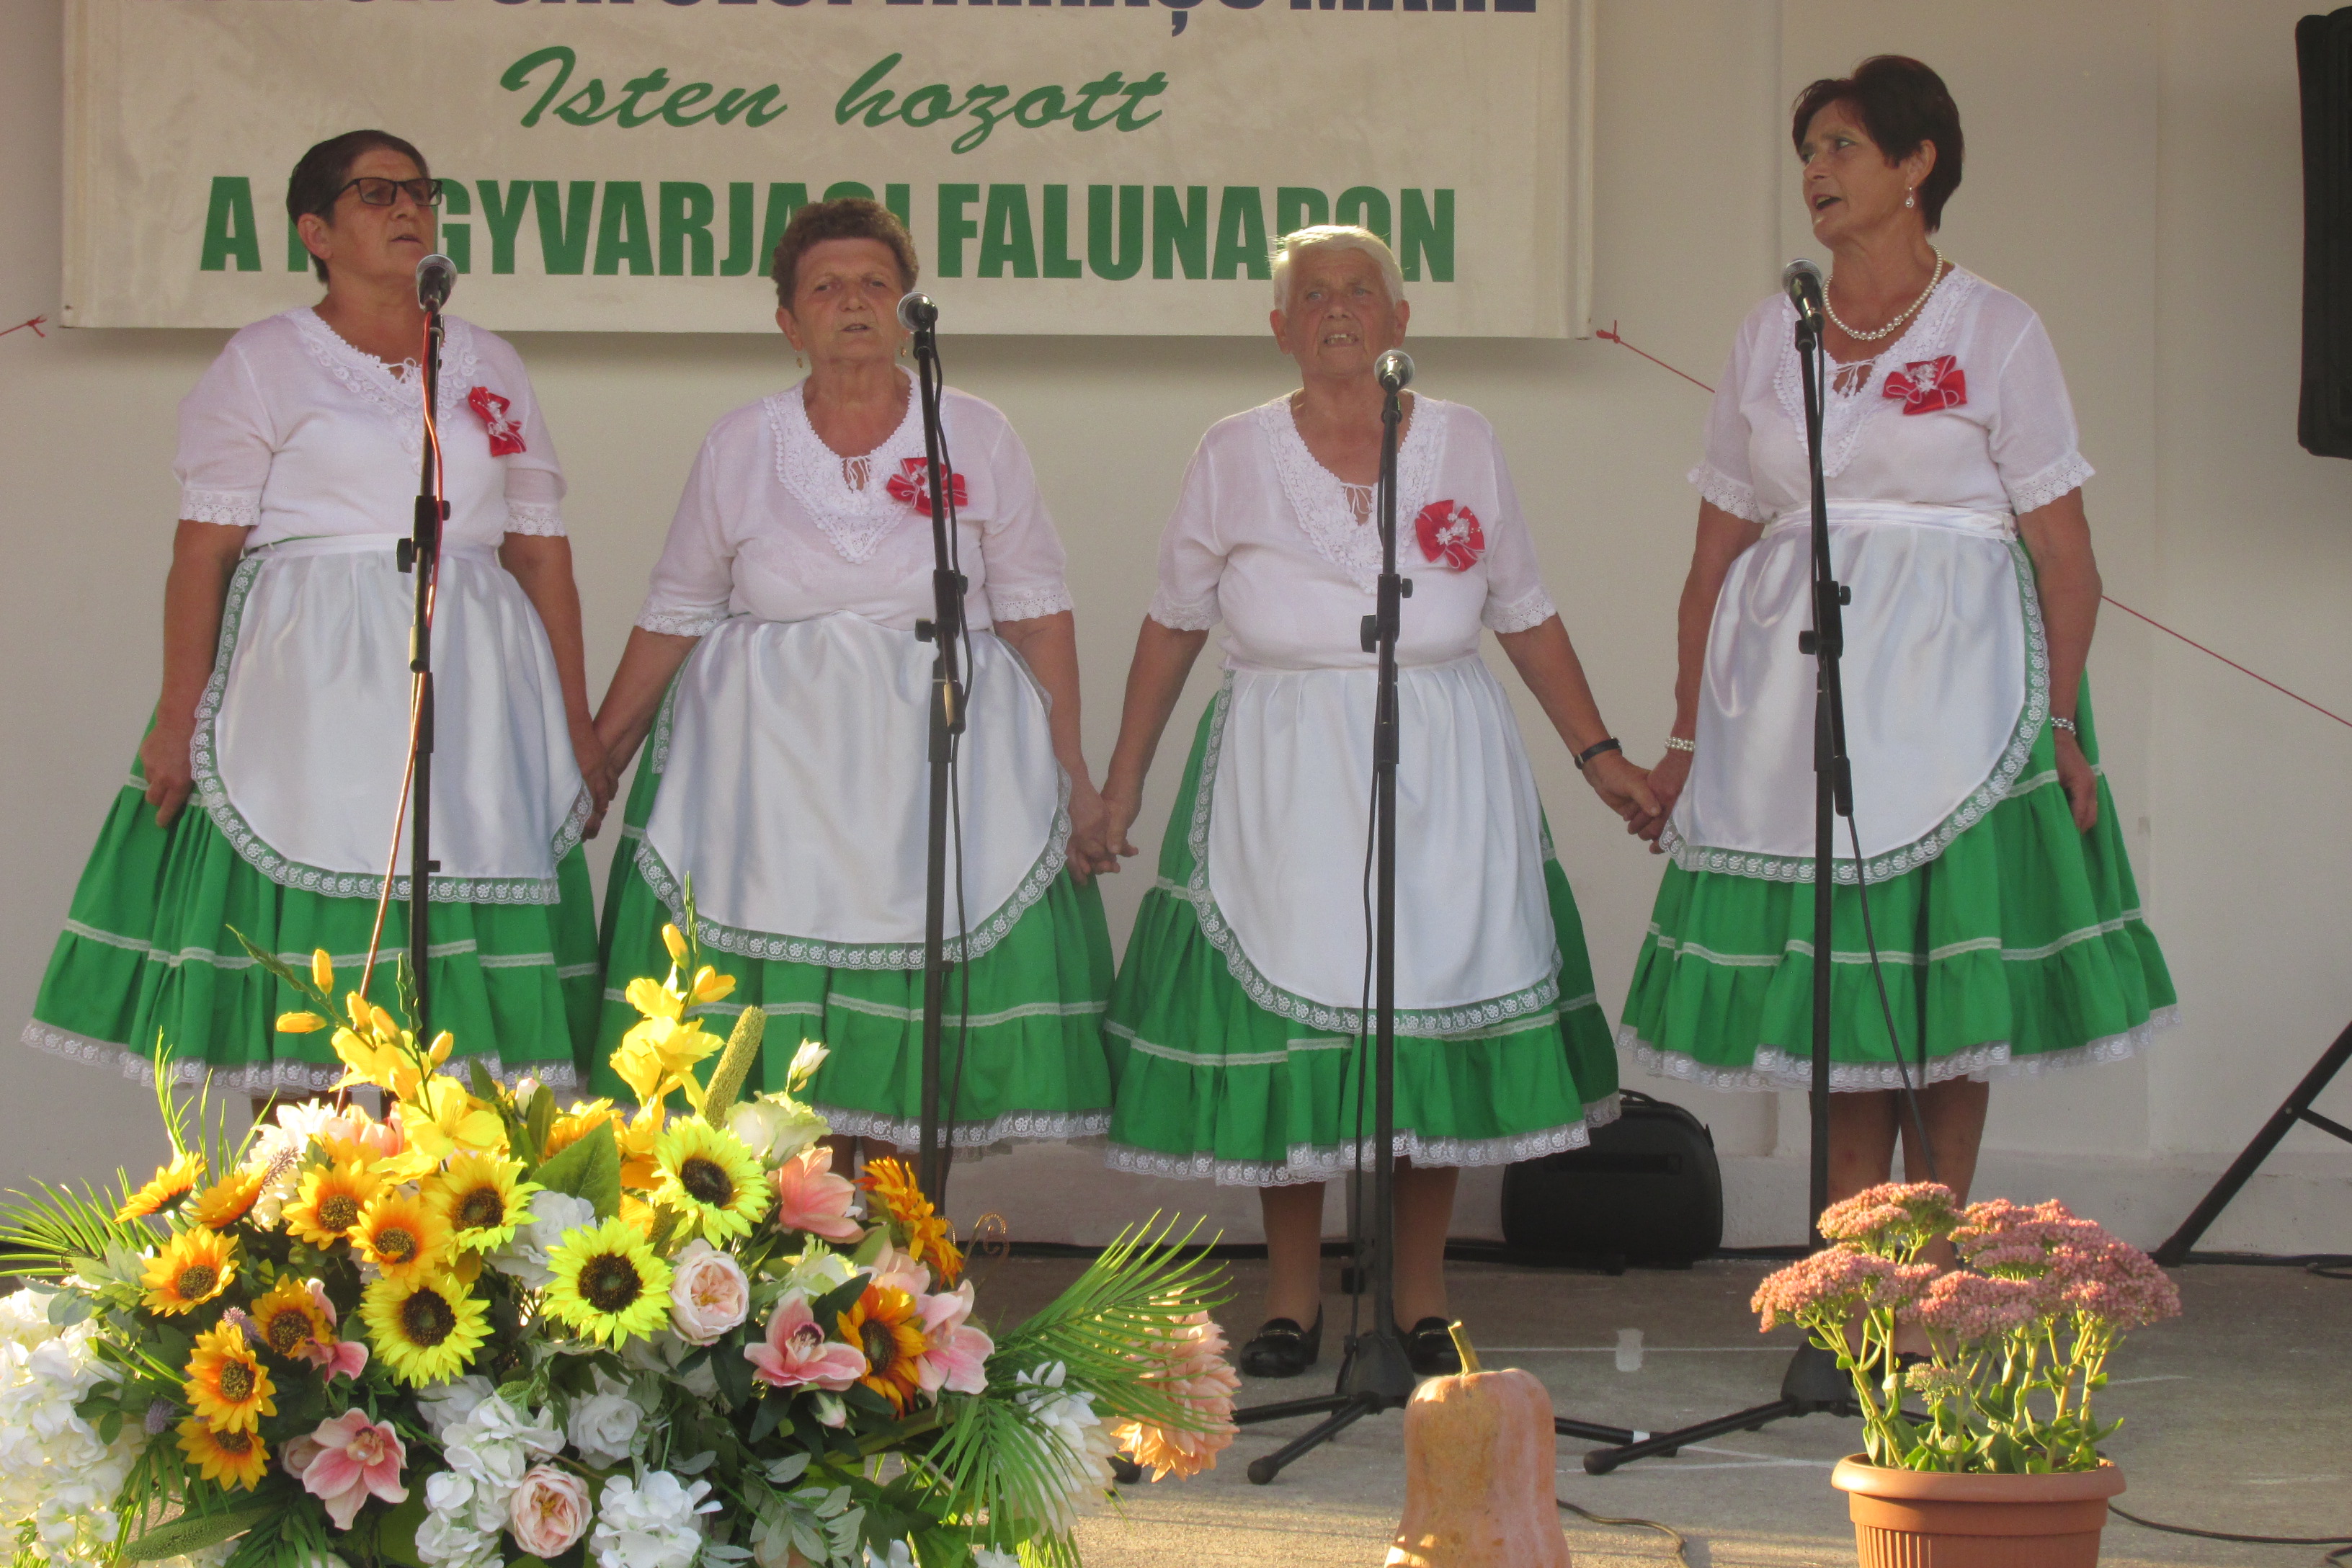 A Nagyvarjasi Asszonykórus tagjai első bemutatkozásuk alkalmával közismert népdalokat és magyar nótákat énekeltek